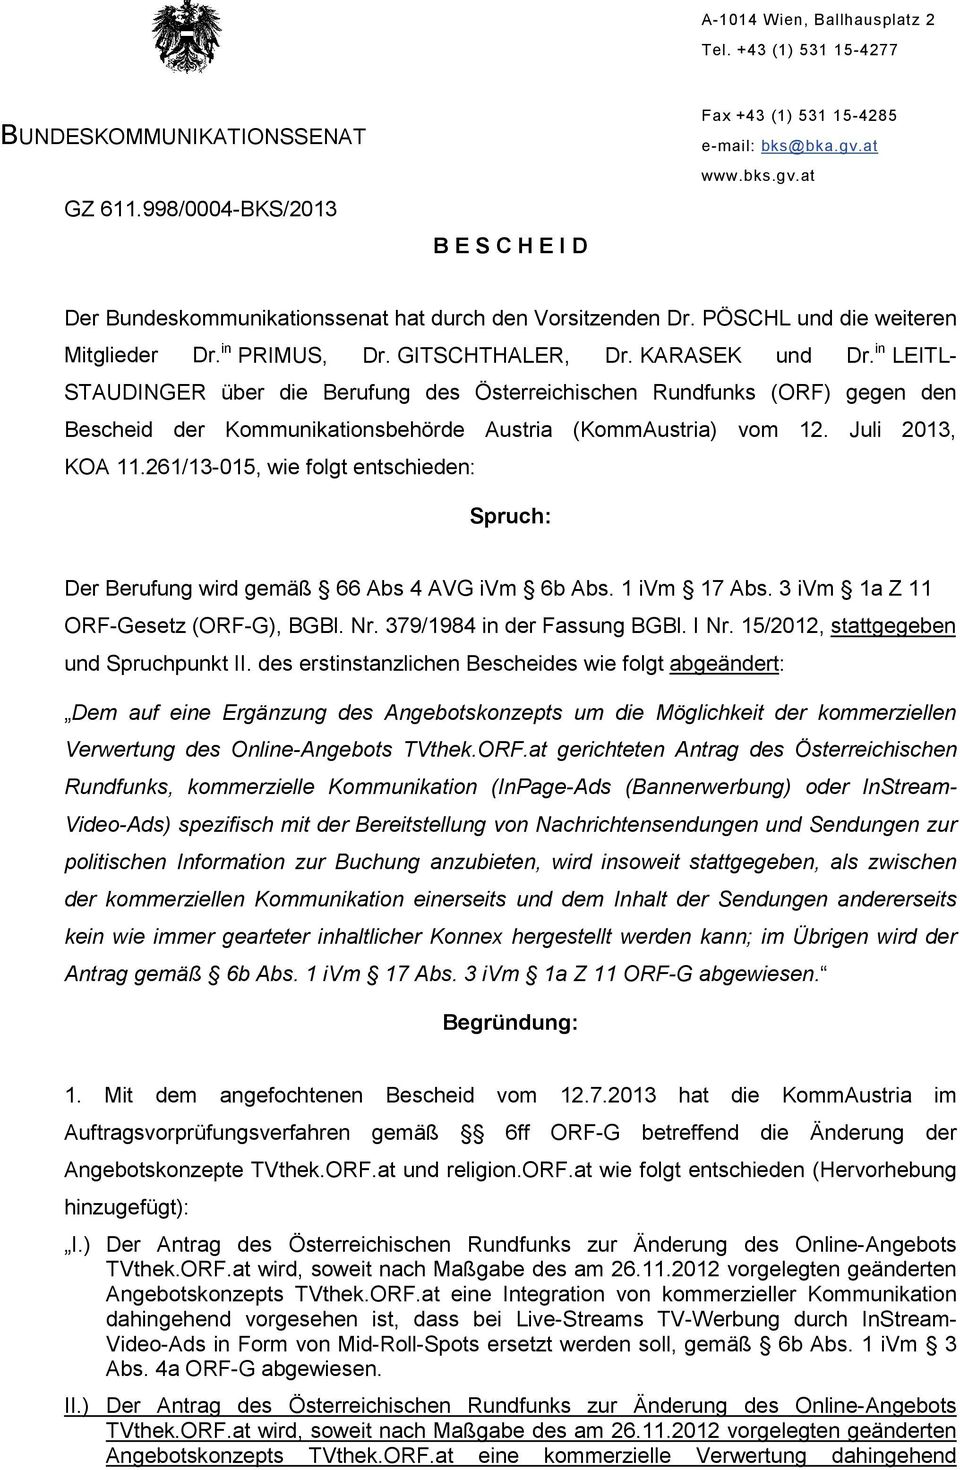 in LEITL- STAUDINGER über die Berufung des Österreichischen Rundfunks (ORF) gegen den Bescheid der Kommunikationsbehörde Austria (KommAustria) vom 12. Juli 2013, KOA 11.